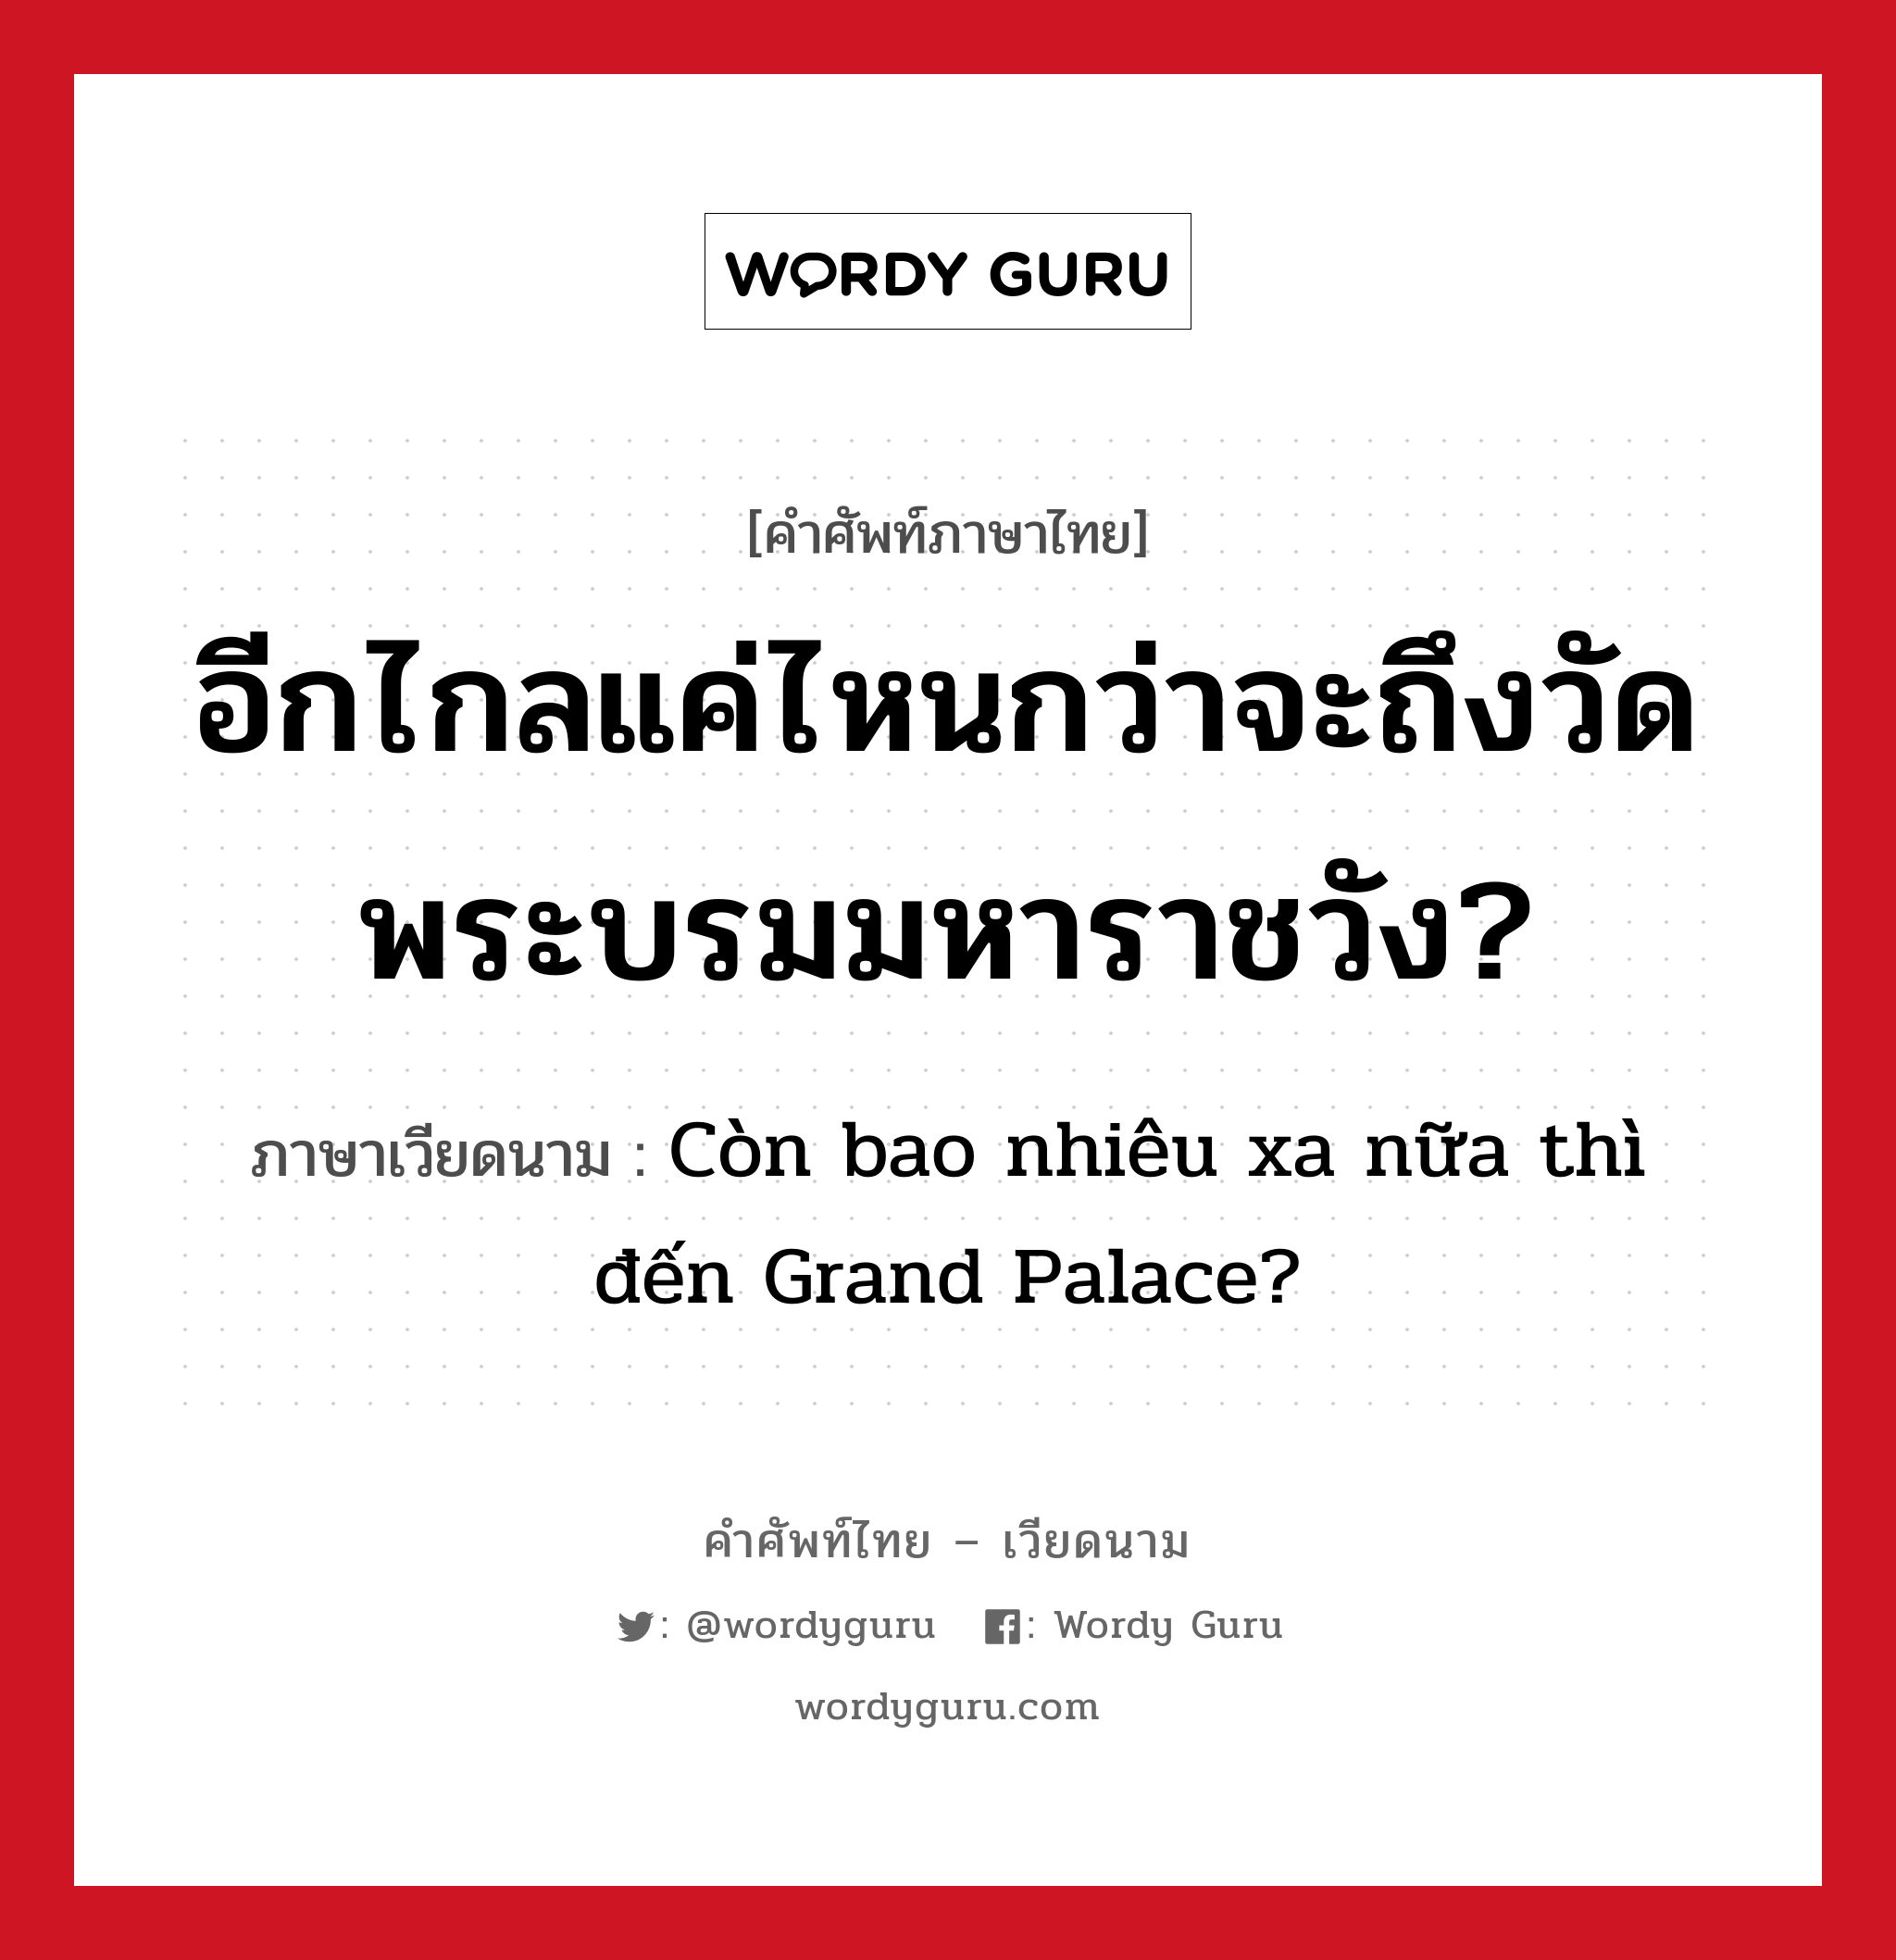 อีกไกลแค่ไหนกว่าจะถึงวัดพระบรมมหาราชวัง? ภาษาเวียดนามคืออะไร, คำศัพท์ภาษาไทย - เวียดนาม อีกไกลแค่ไหนกว่าจะถึงวัดพระบรมมหาราชวัง? ภาษาเวียดนาม Còn bao nhiêu xa nữa thì đến Grand Palace? หมวด การเดินทาง หมวด การเดินทาง